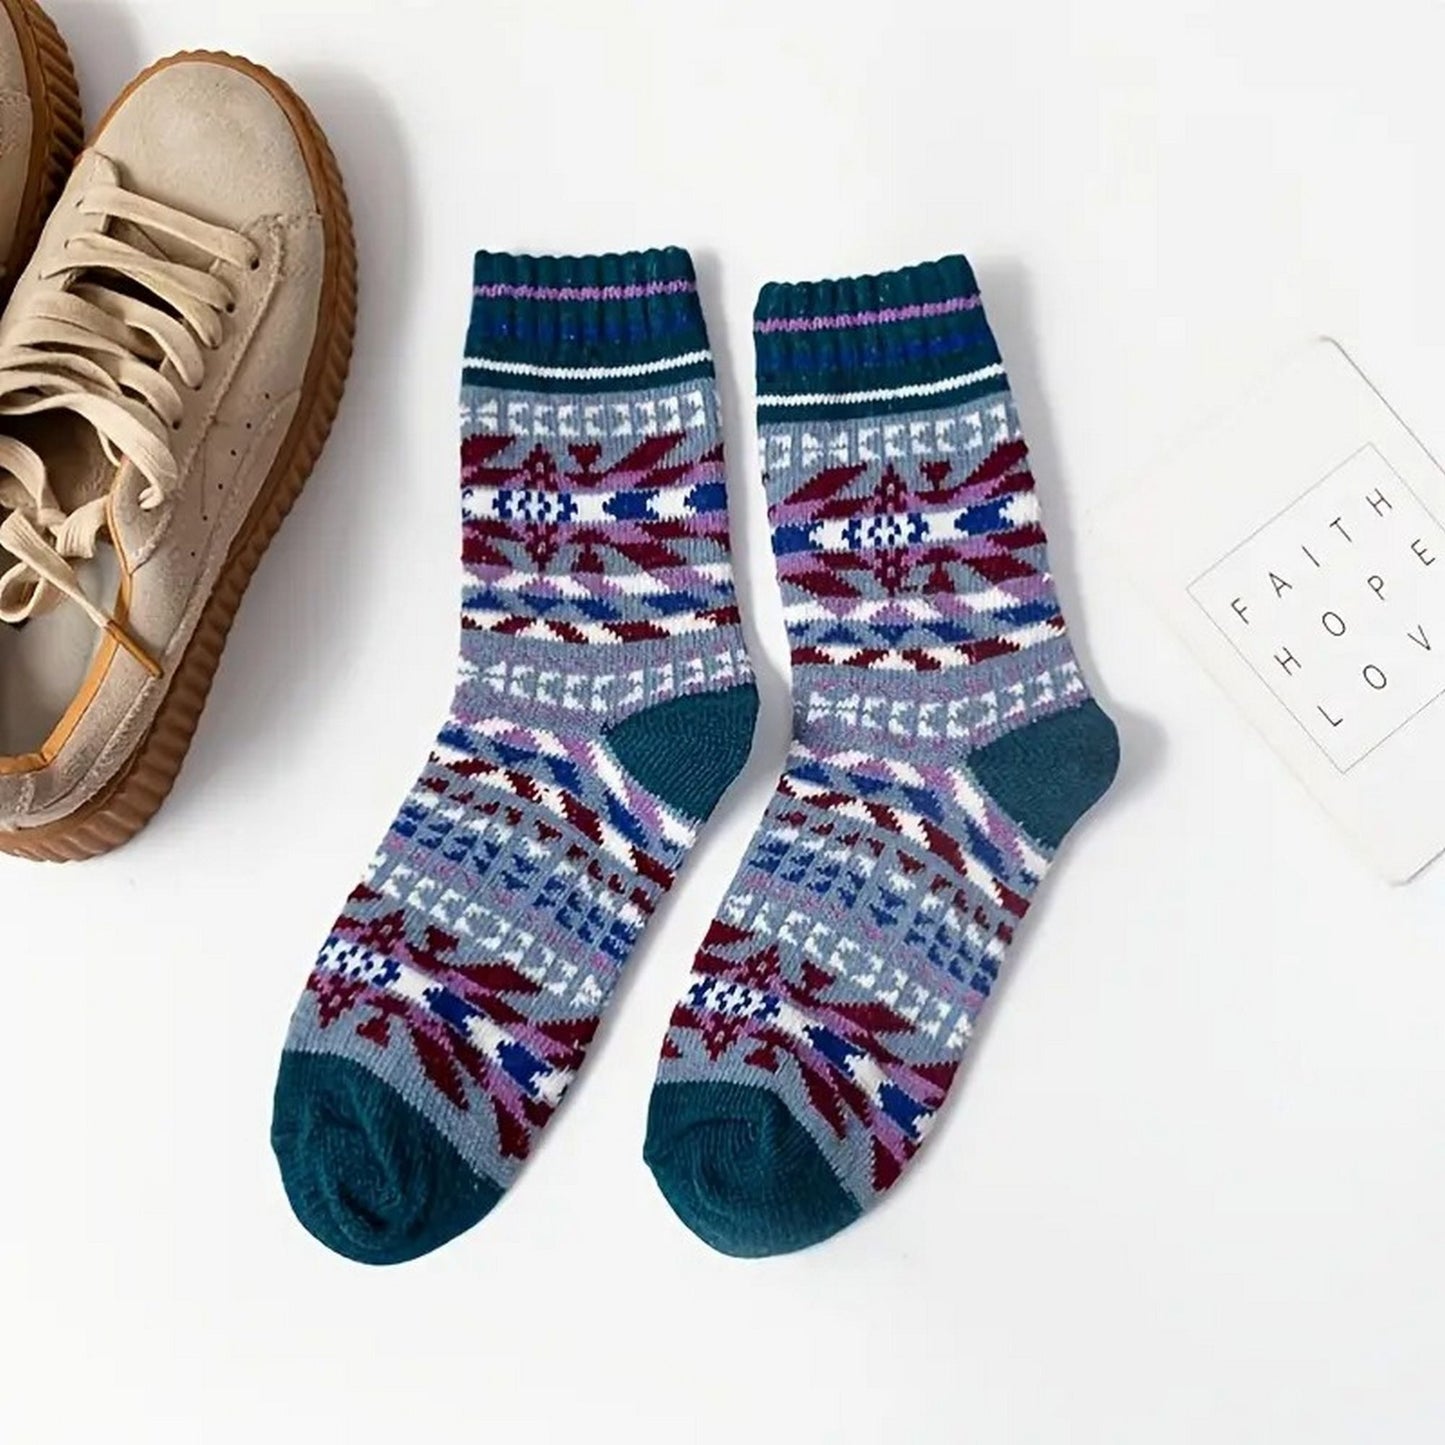 Kinley Adan Aztec Pattern Winter Socks for Women Teal Blue Gift Packaged